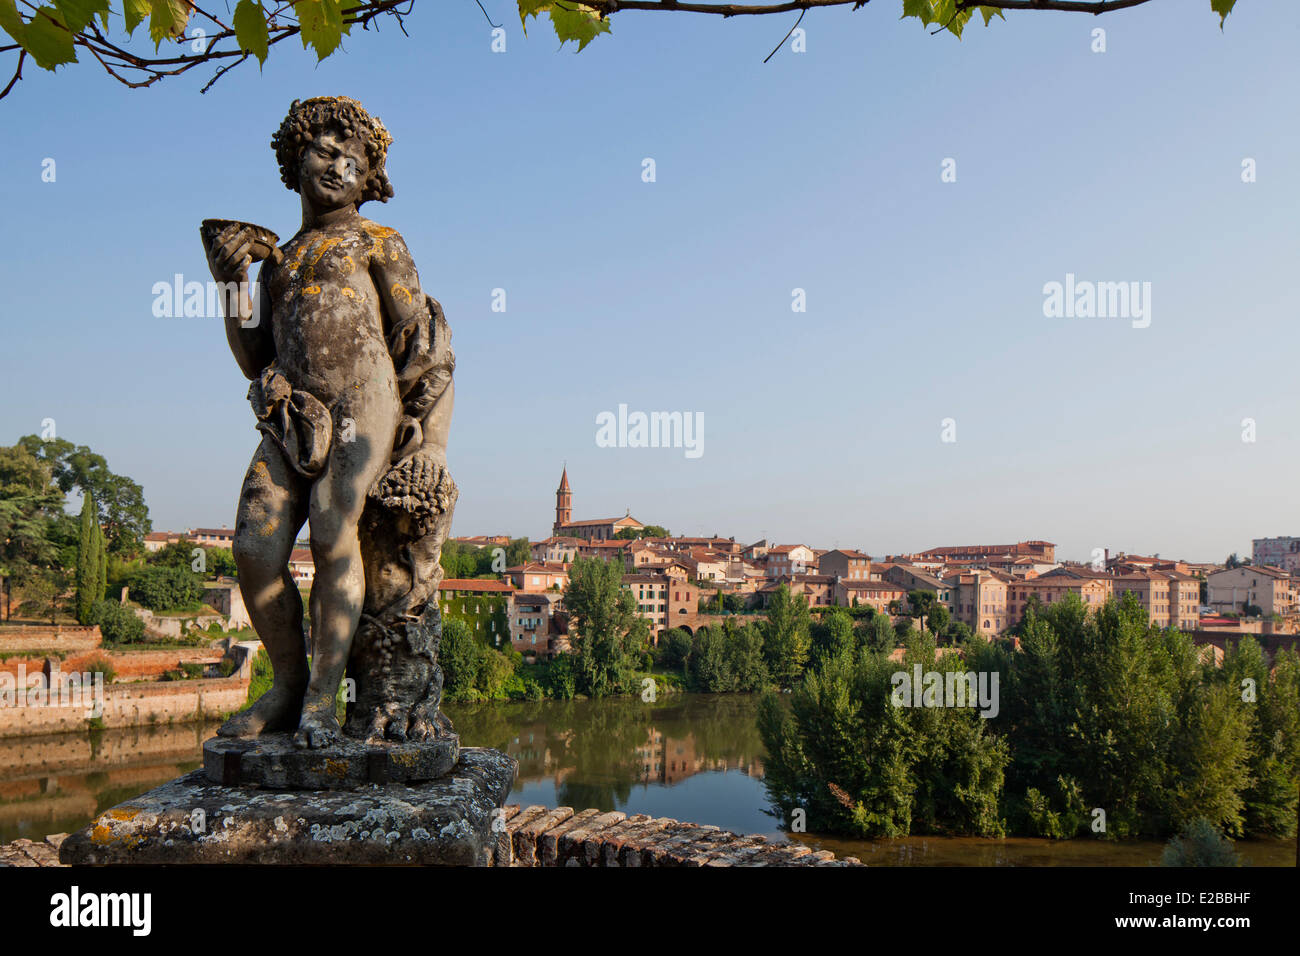 Francia, Tarn, Albi, la città episcopale, classificato come patrimonio mondiale dall' UNESCO, scultura nel giardino del Palais de la Berbie Foto Stock